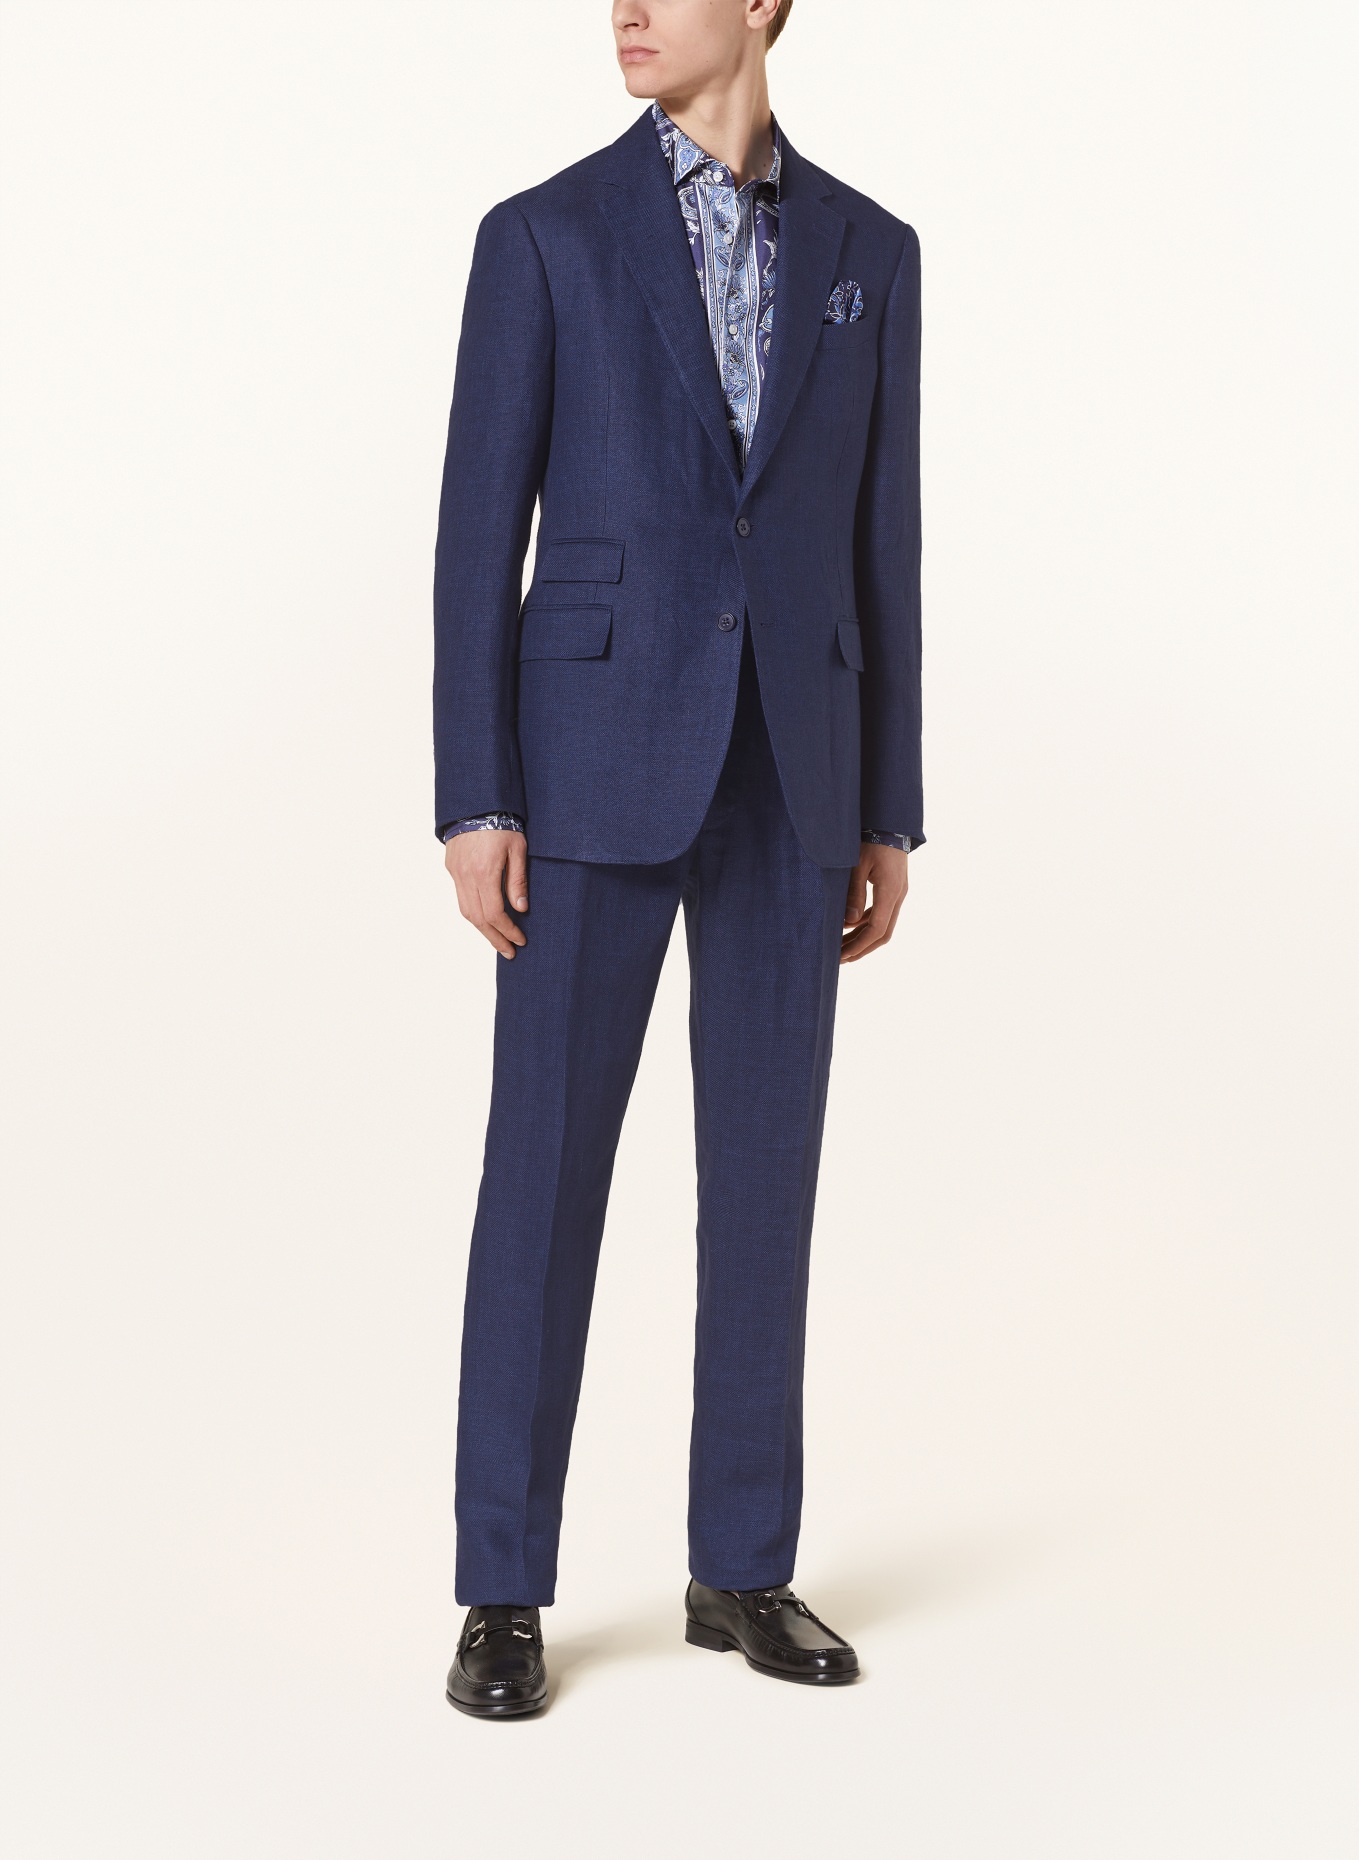 RALPH LAUREN PURPLE LABEL Suit jacket extra slim fit in linen, Color: DARK BLUE (Image 2)